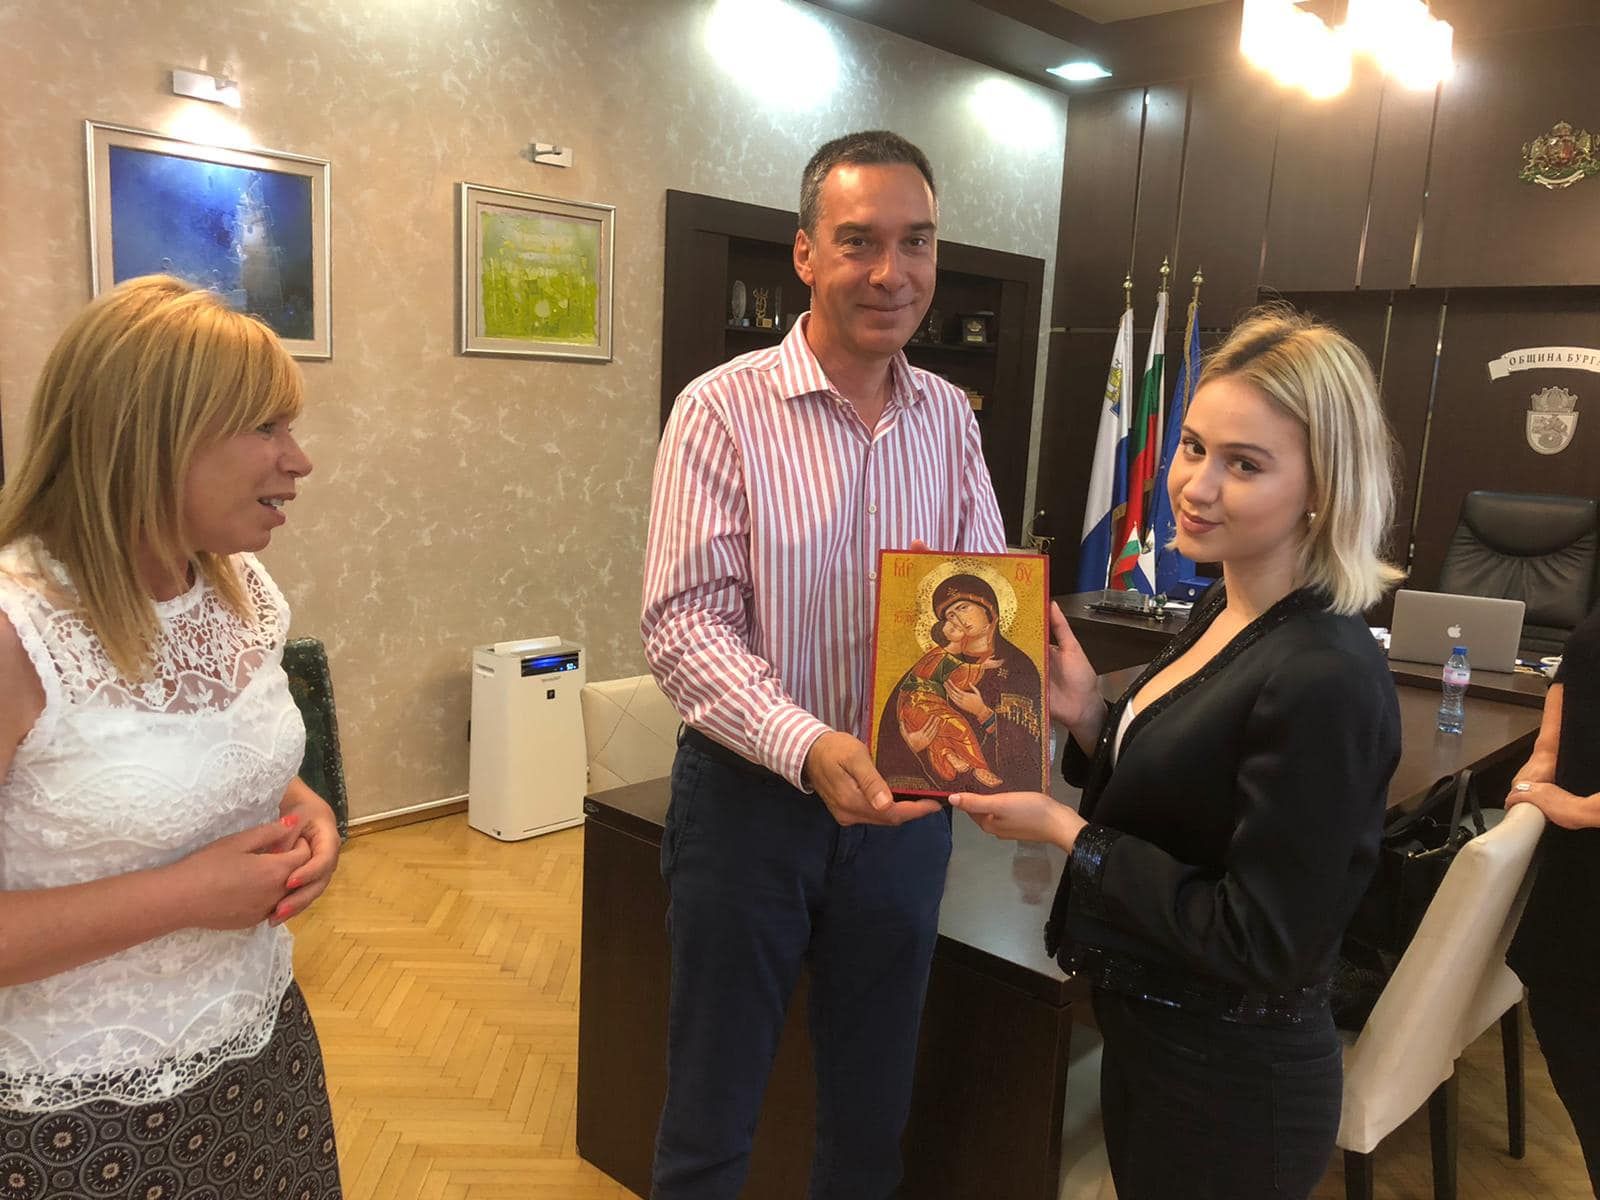 Димитър Николов подари на Мария икона